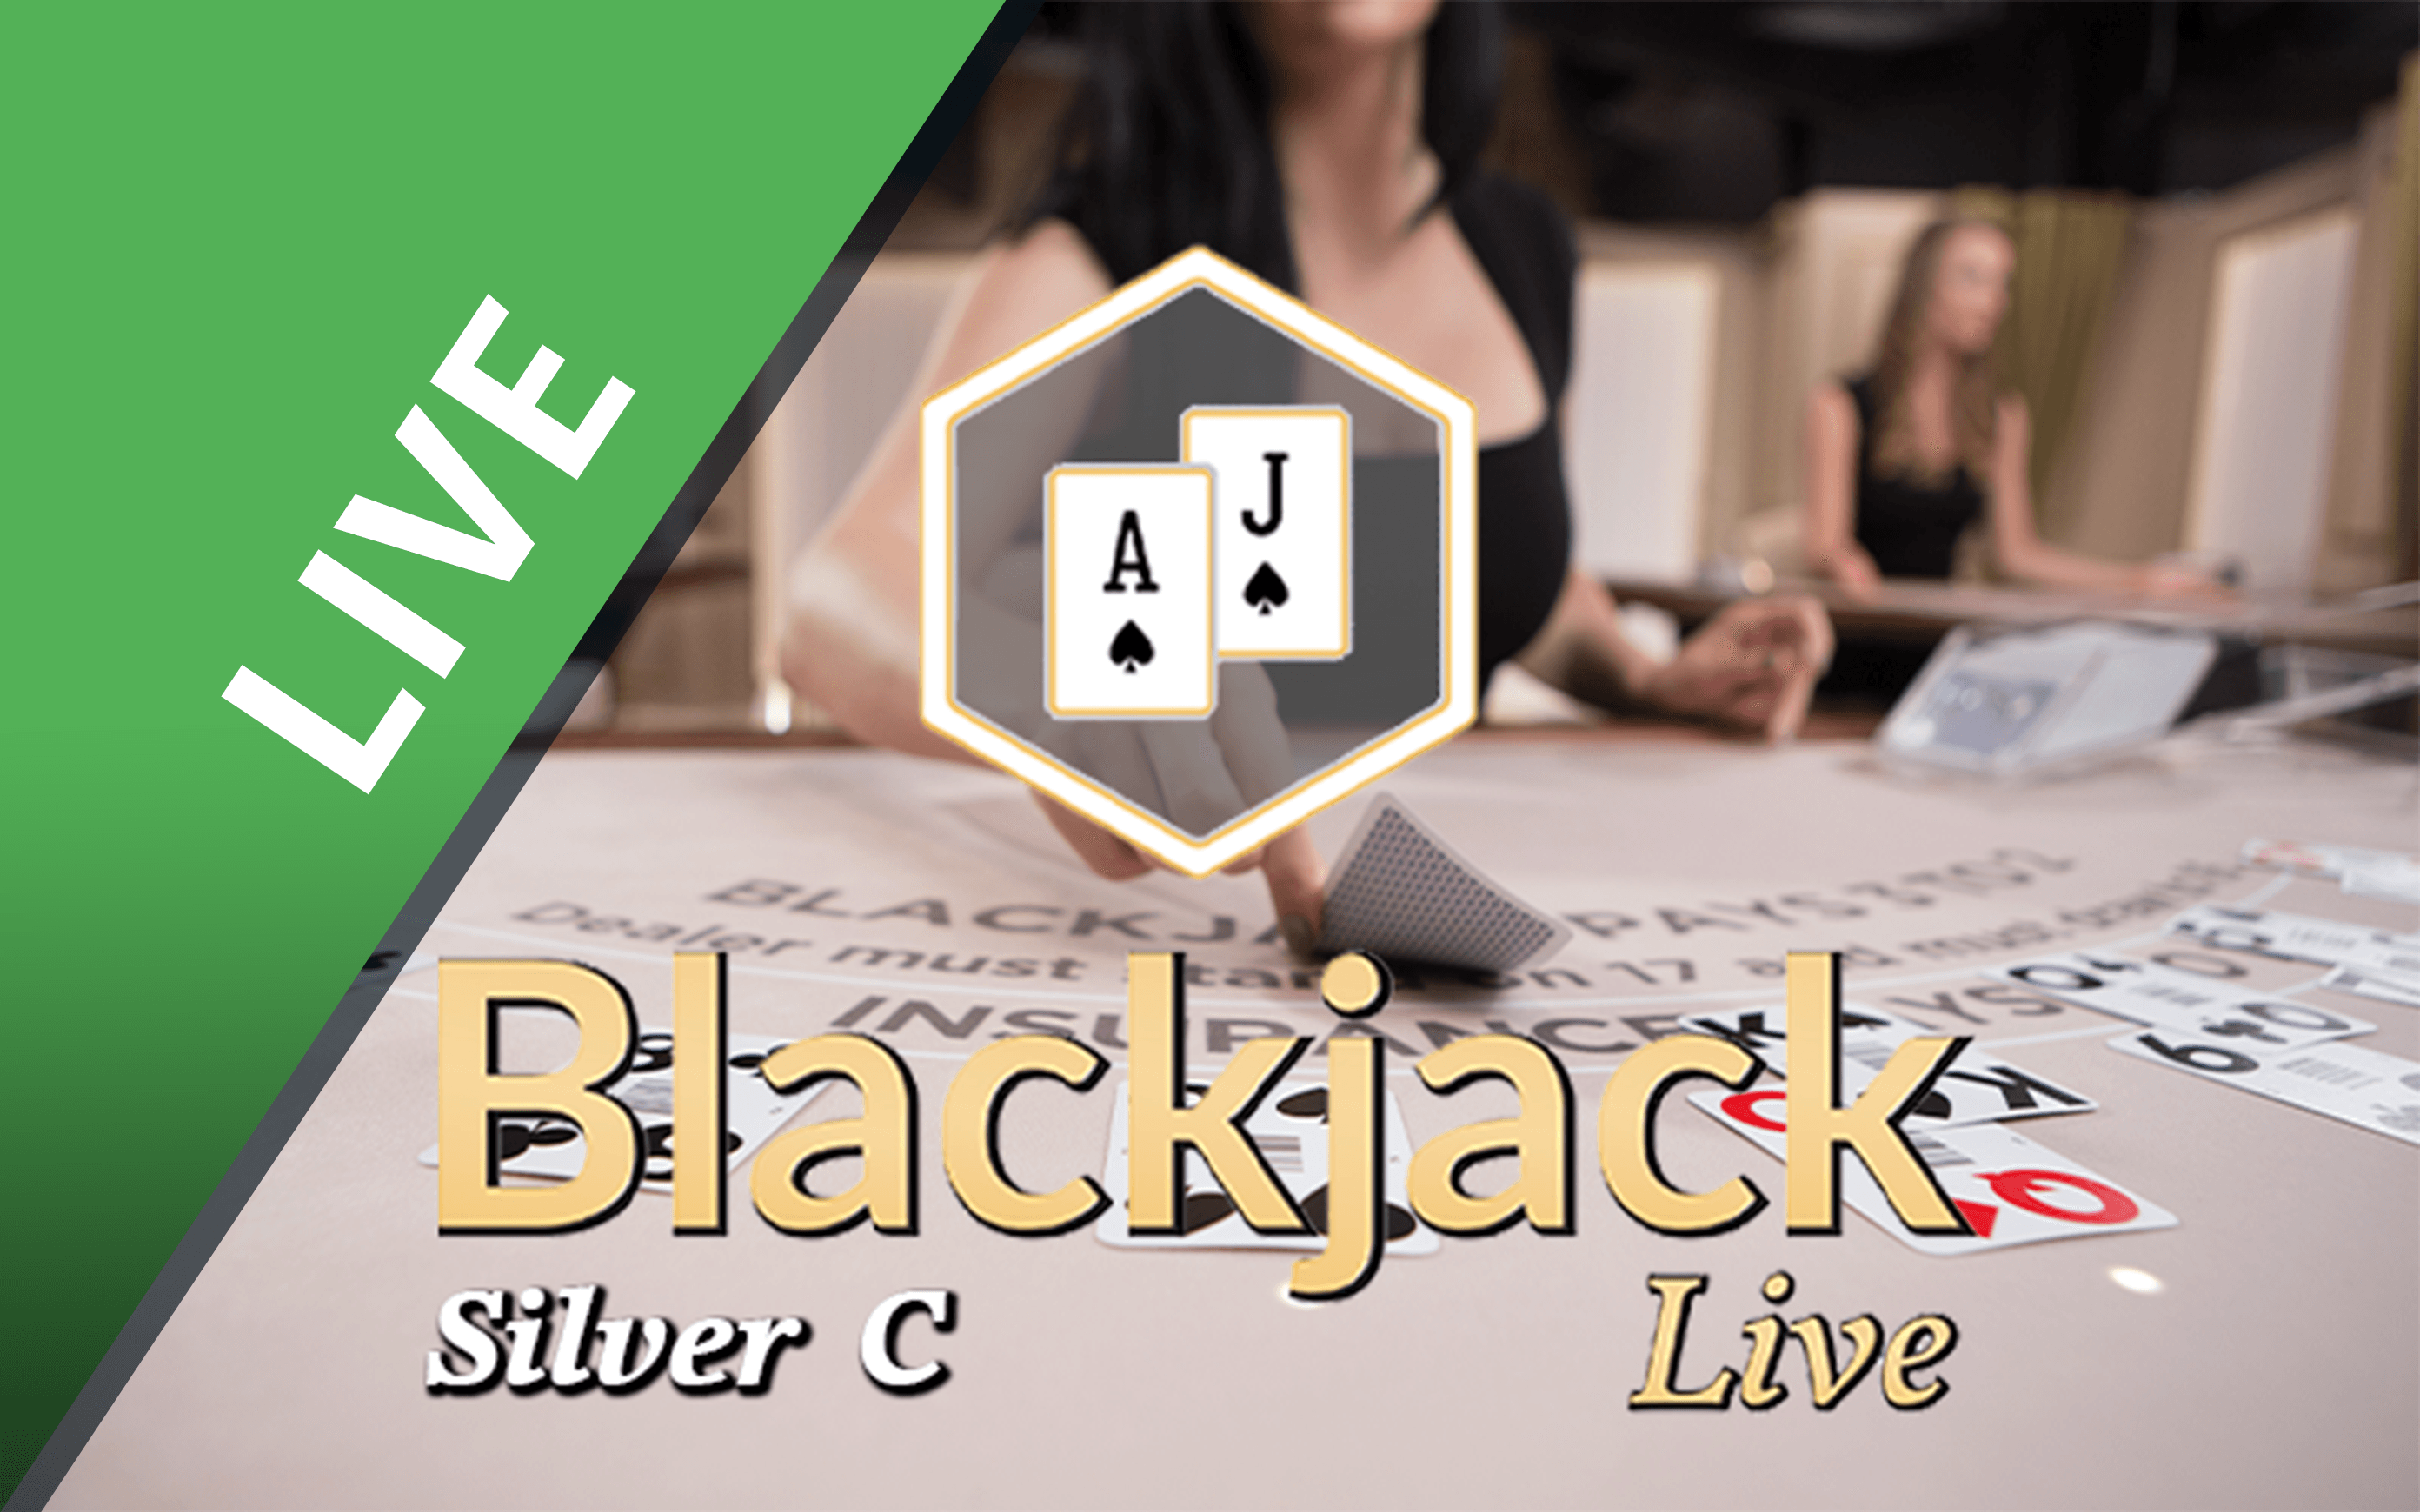 Starcasino.be online casino üzerinden Blackjack Silver C oynayın